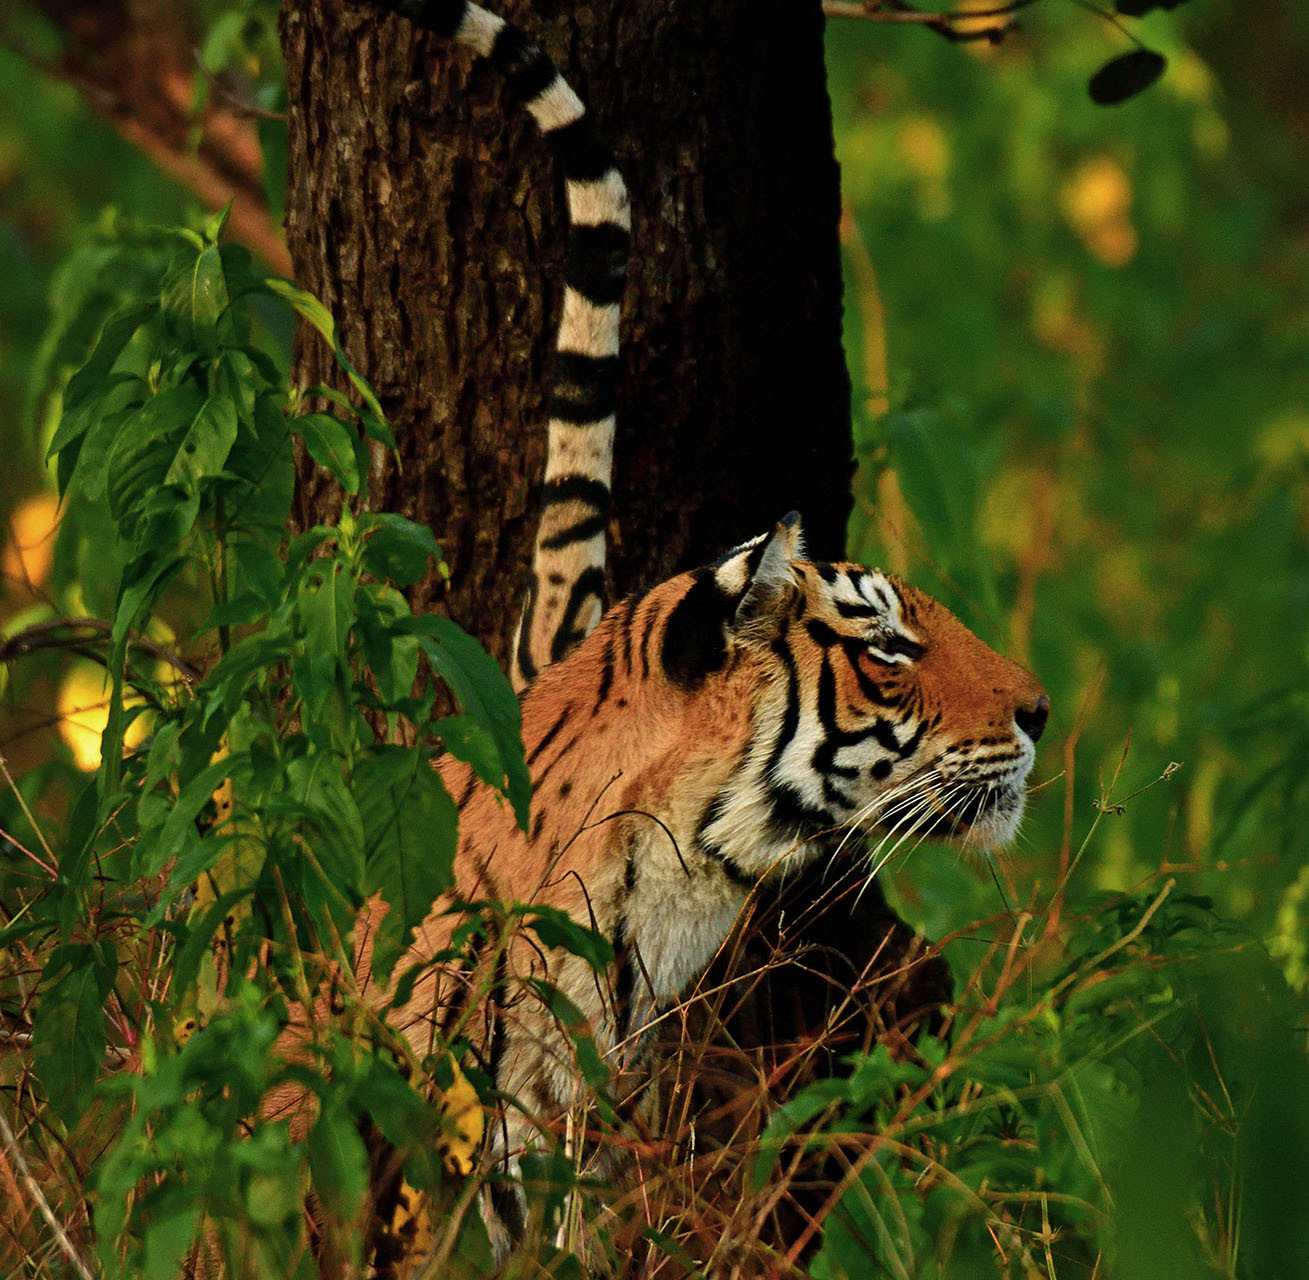 Satpura Tiger Reserve: The Wild Heart Of Madhya Pradesh | Nature inFocus